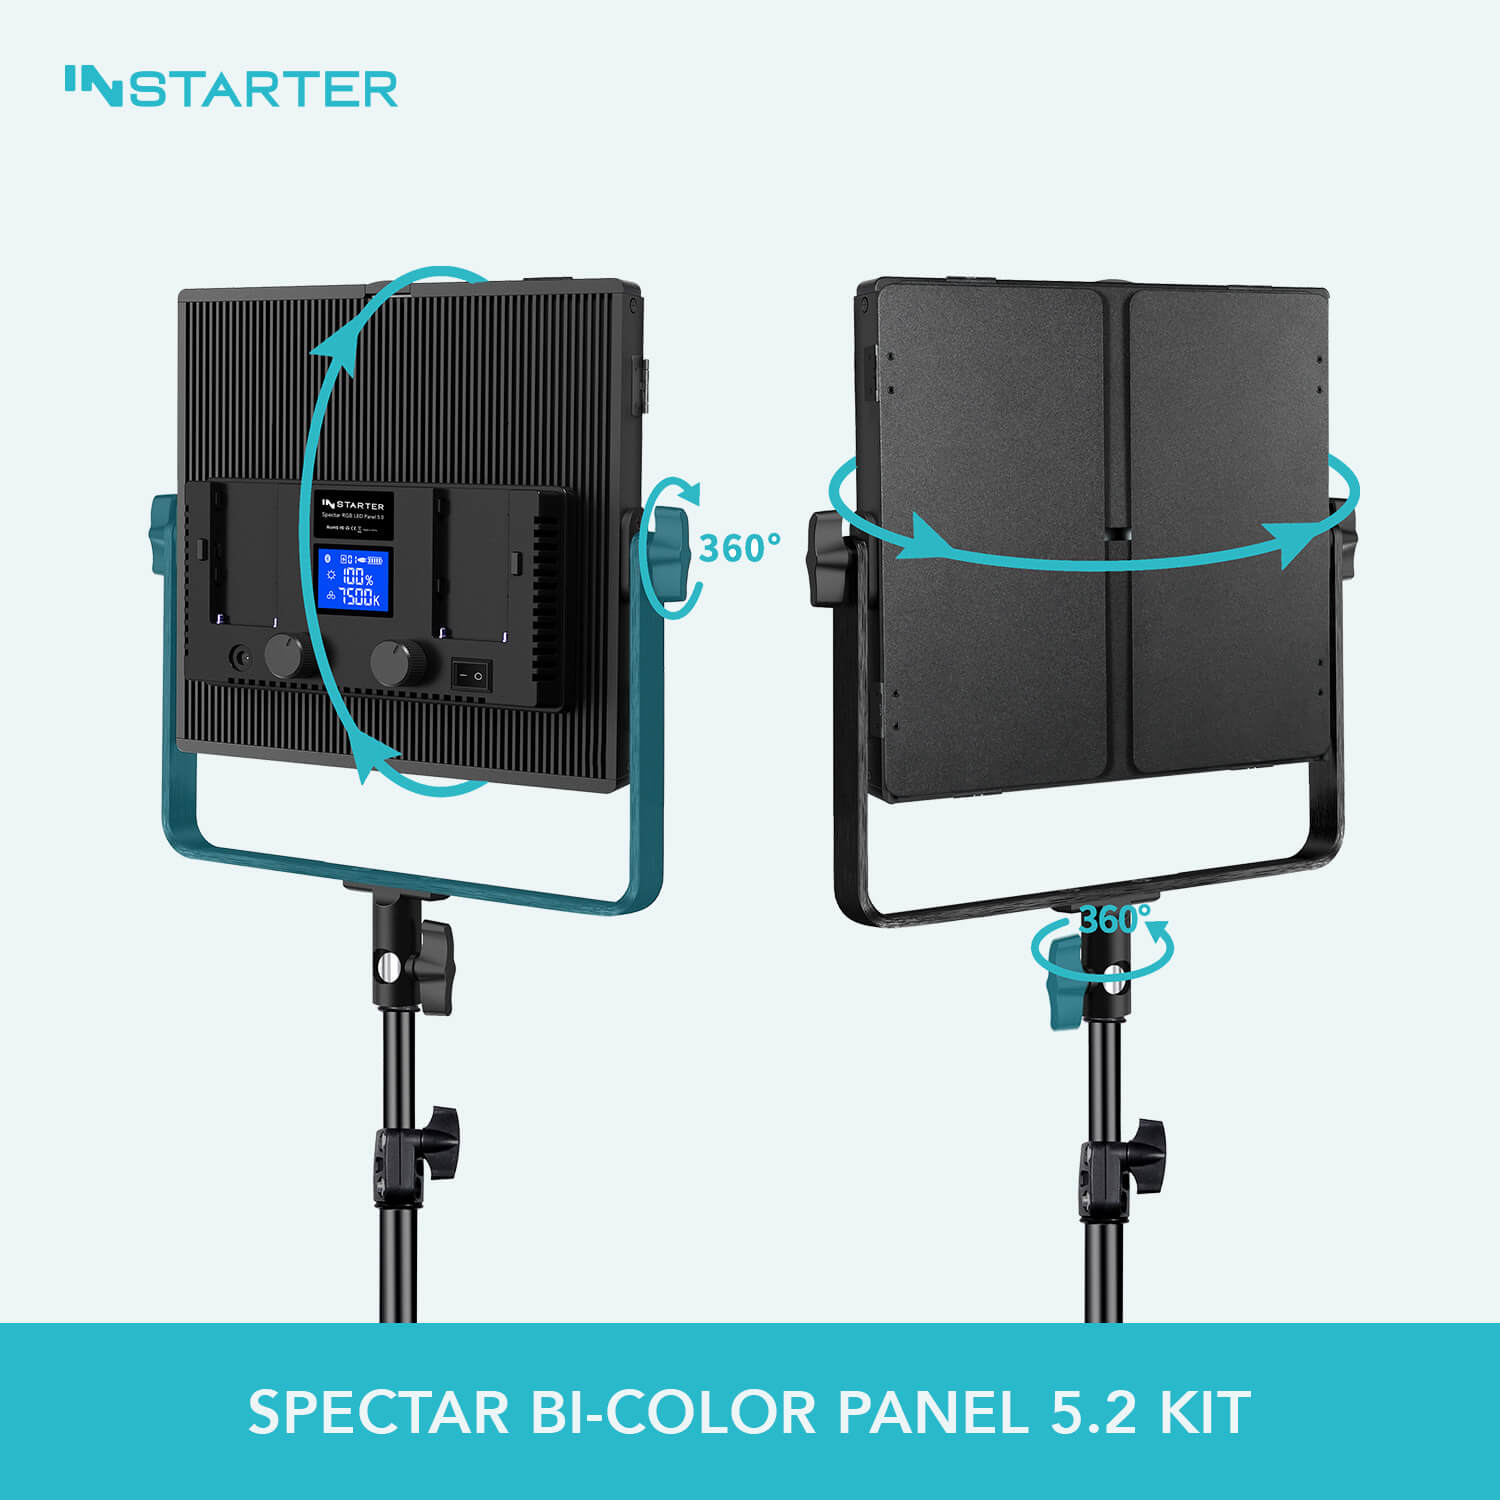 INStarter Spectar Bi-Color LED Panel 5.2 Kit Mounting